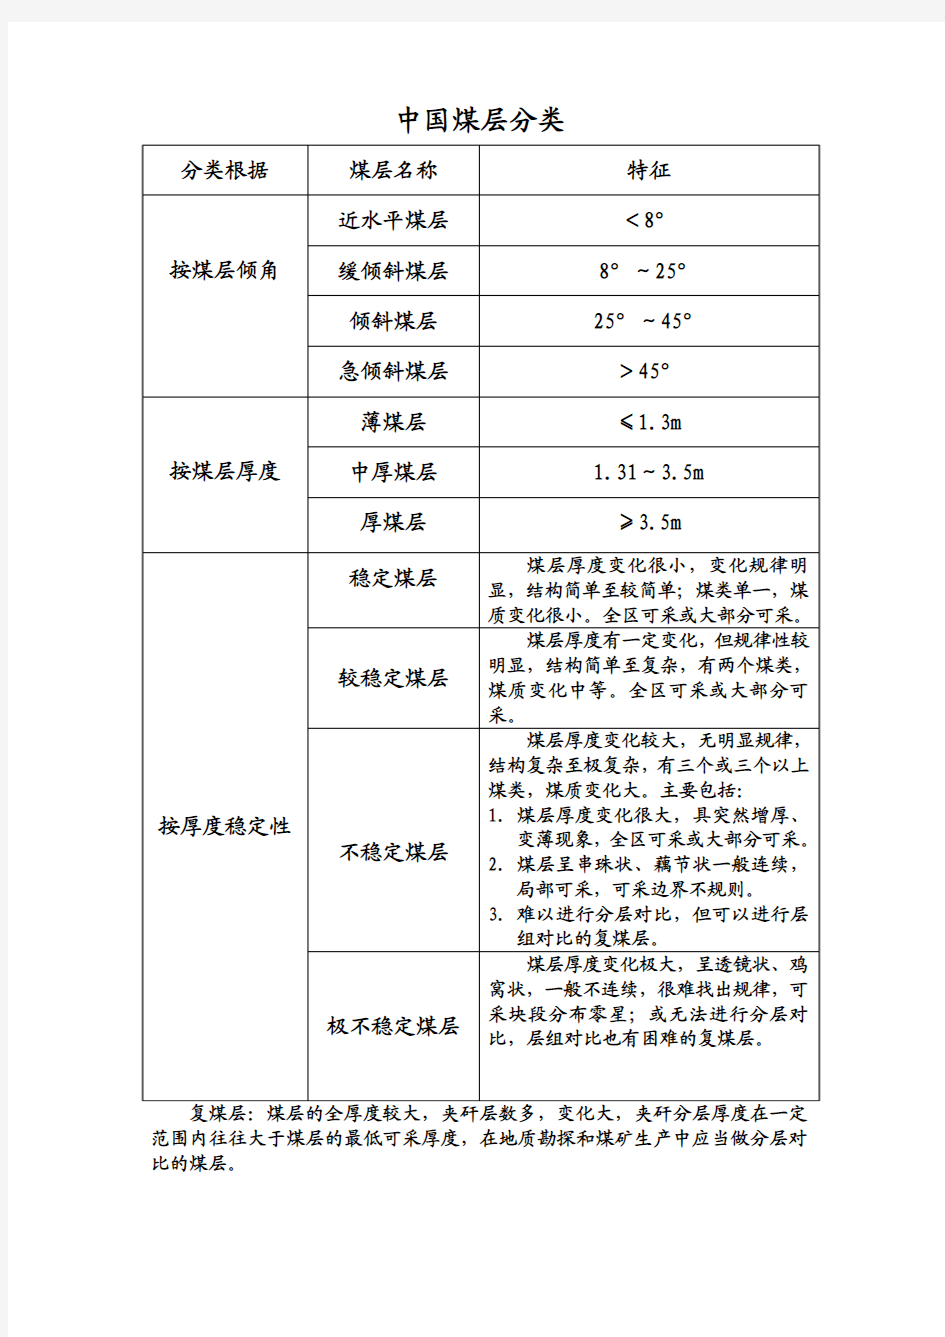 中国煤层分类